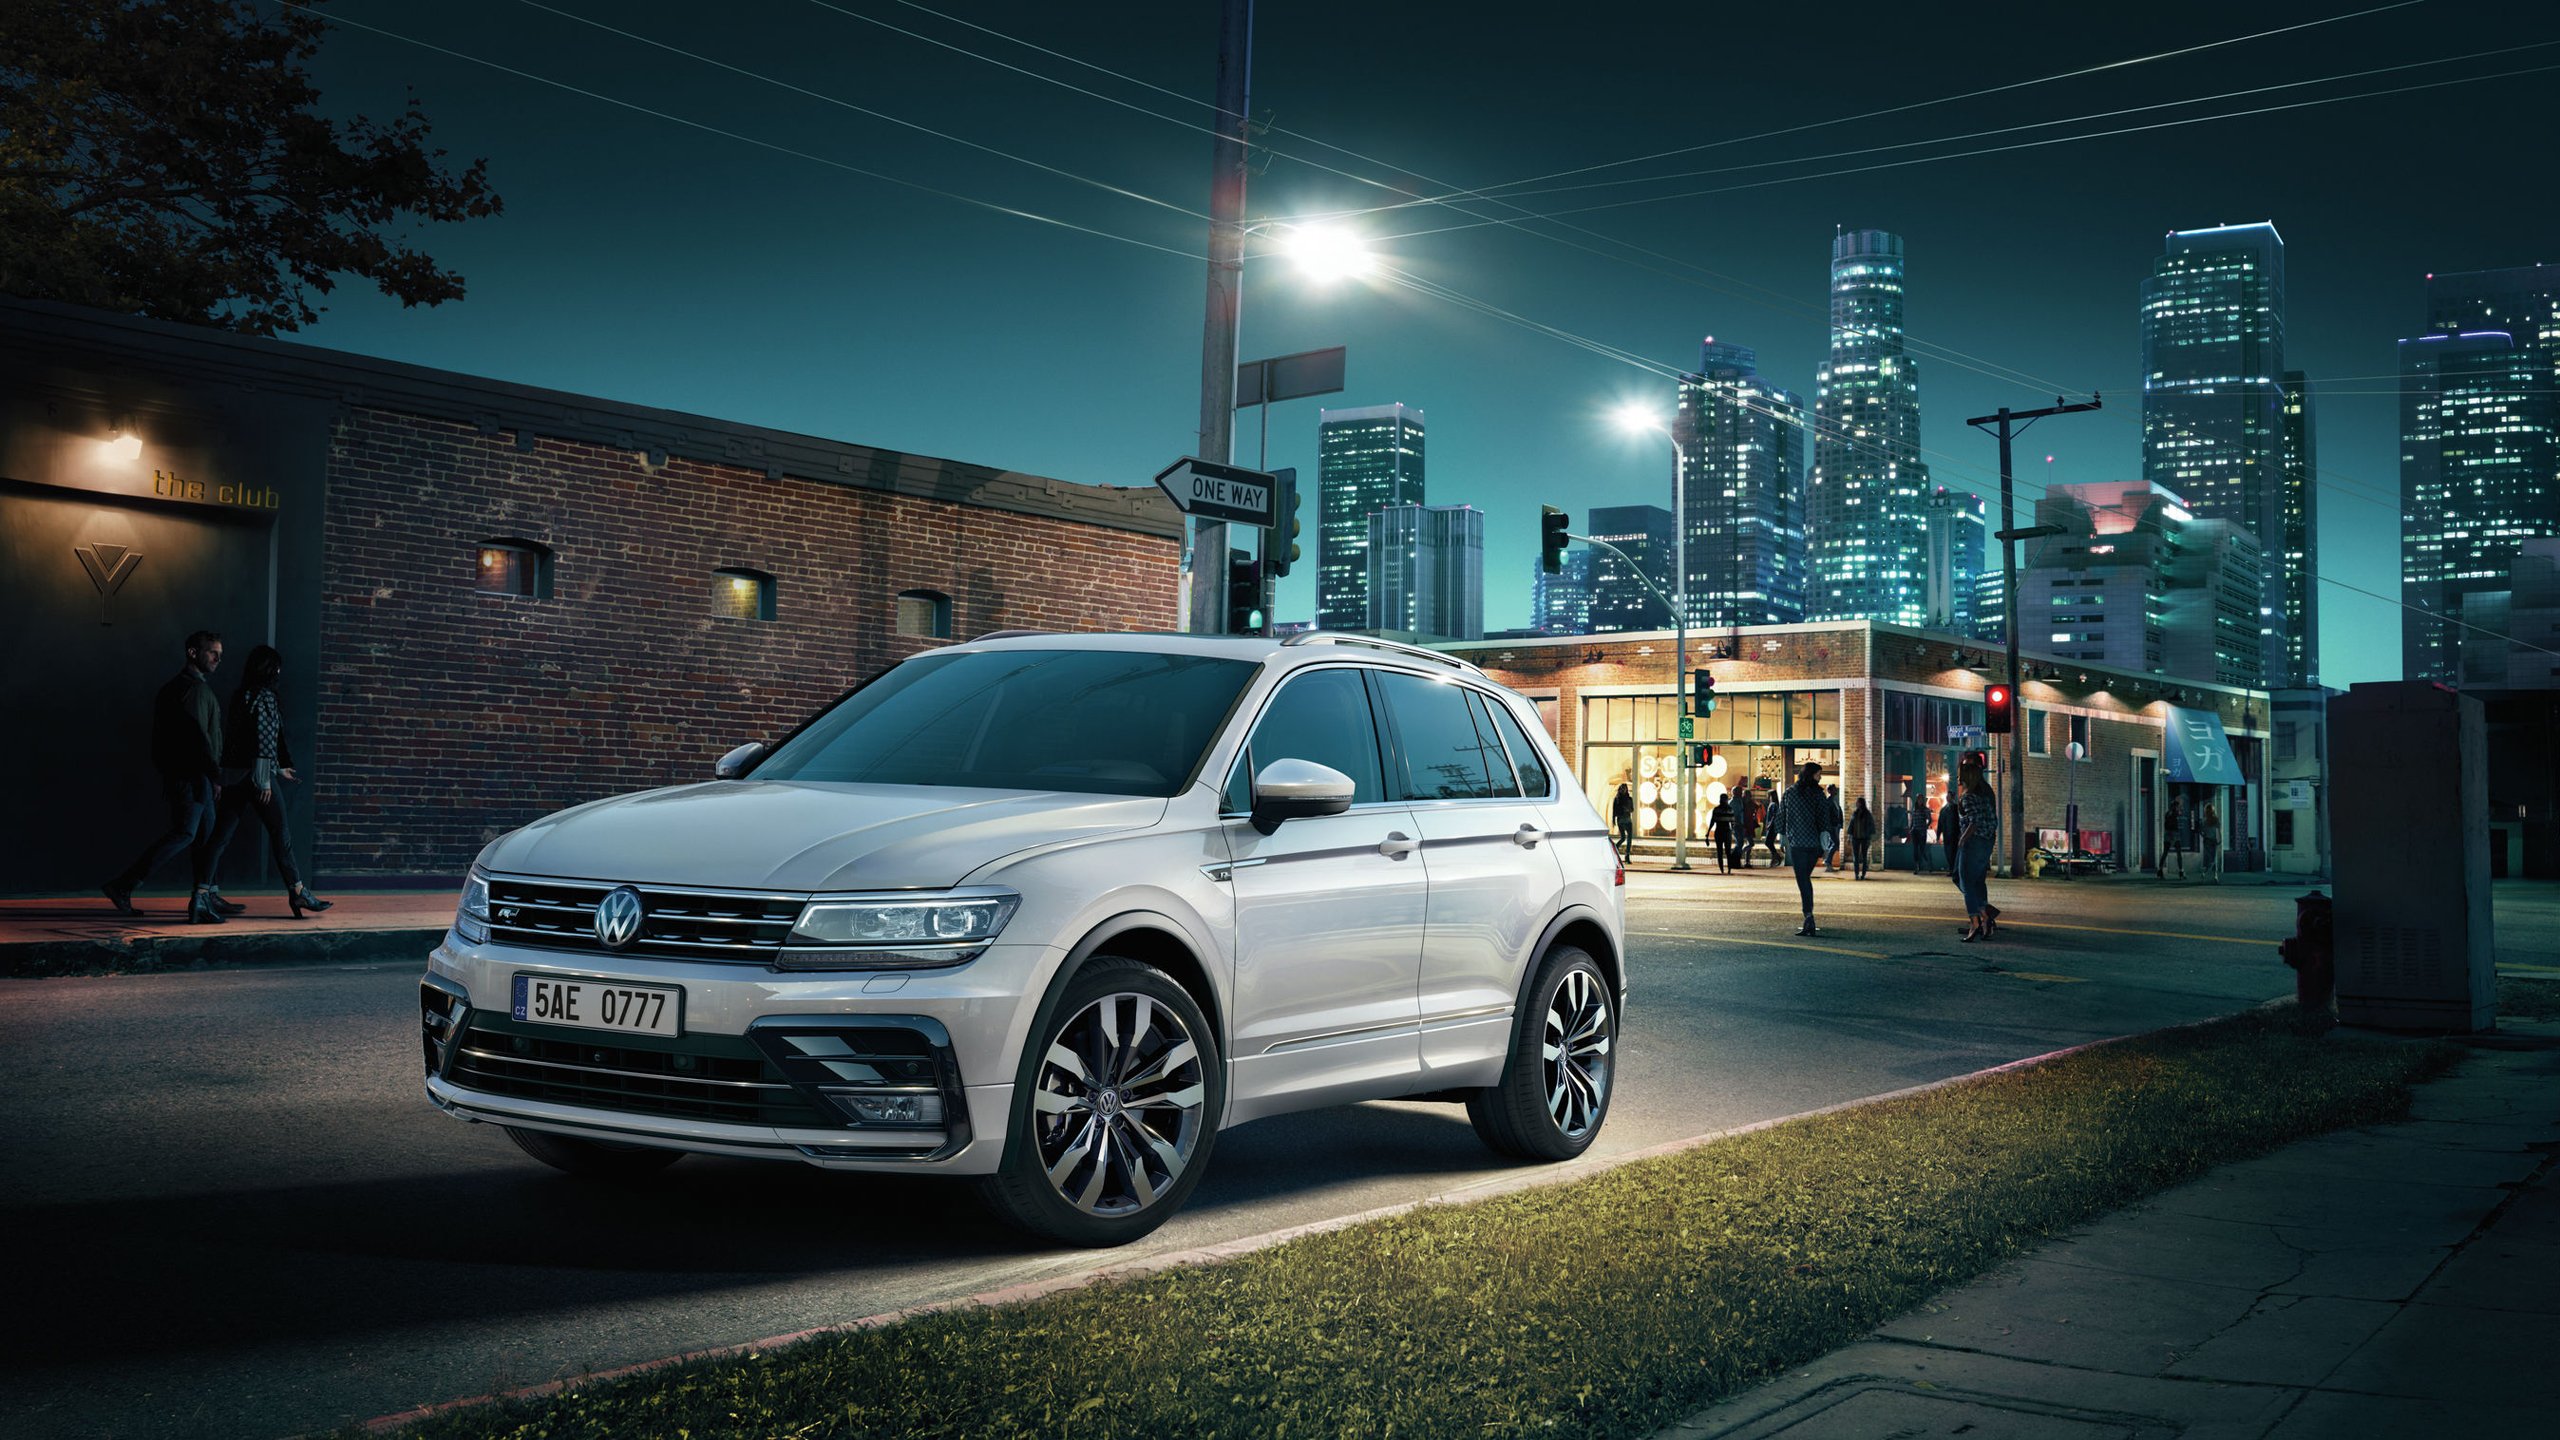 Volkswagen, Volkswagen Tiguan, Car, Cityscape, Night, Street, R Line Wallpaper